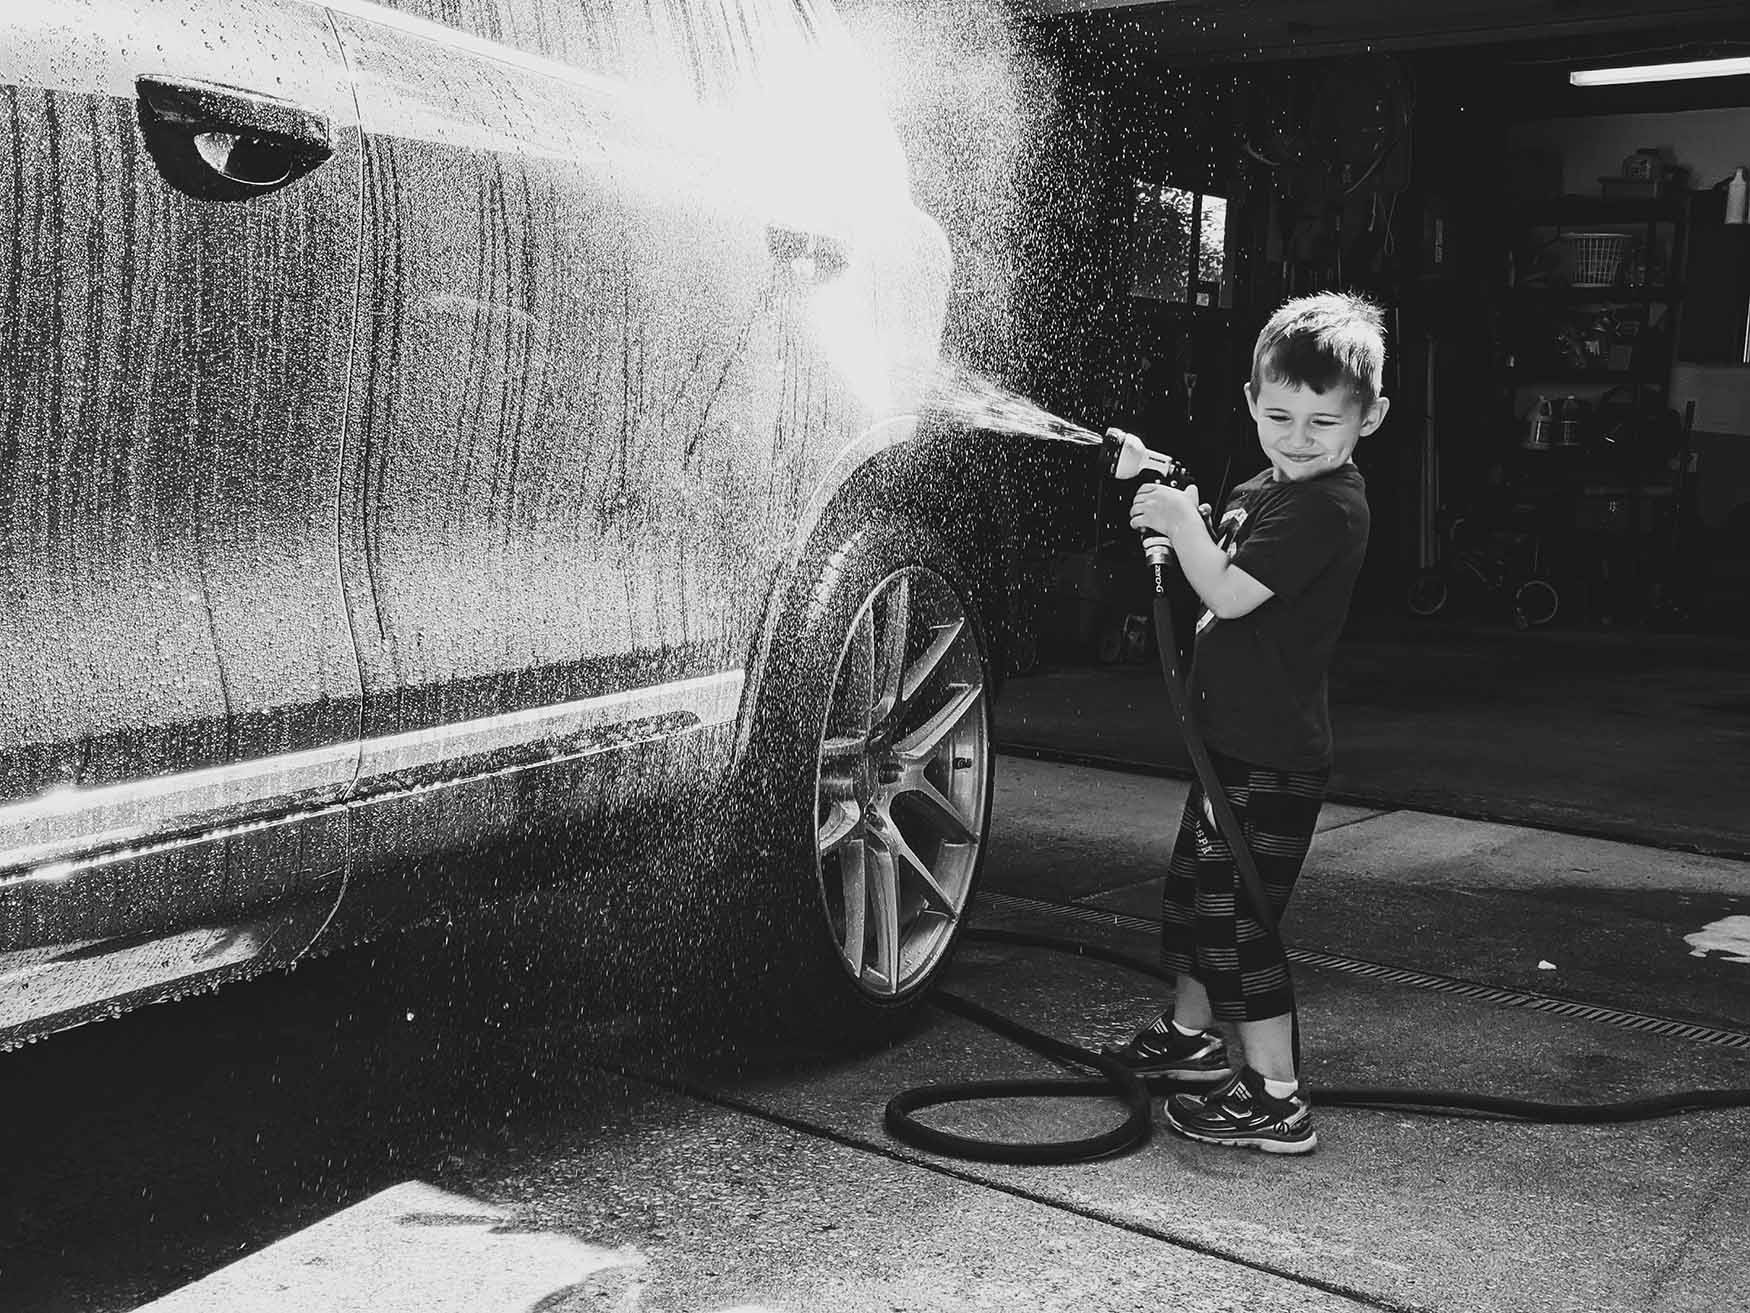 Washing Car - 2014 VW Touareg